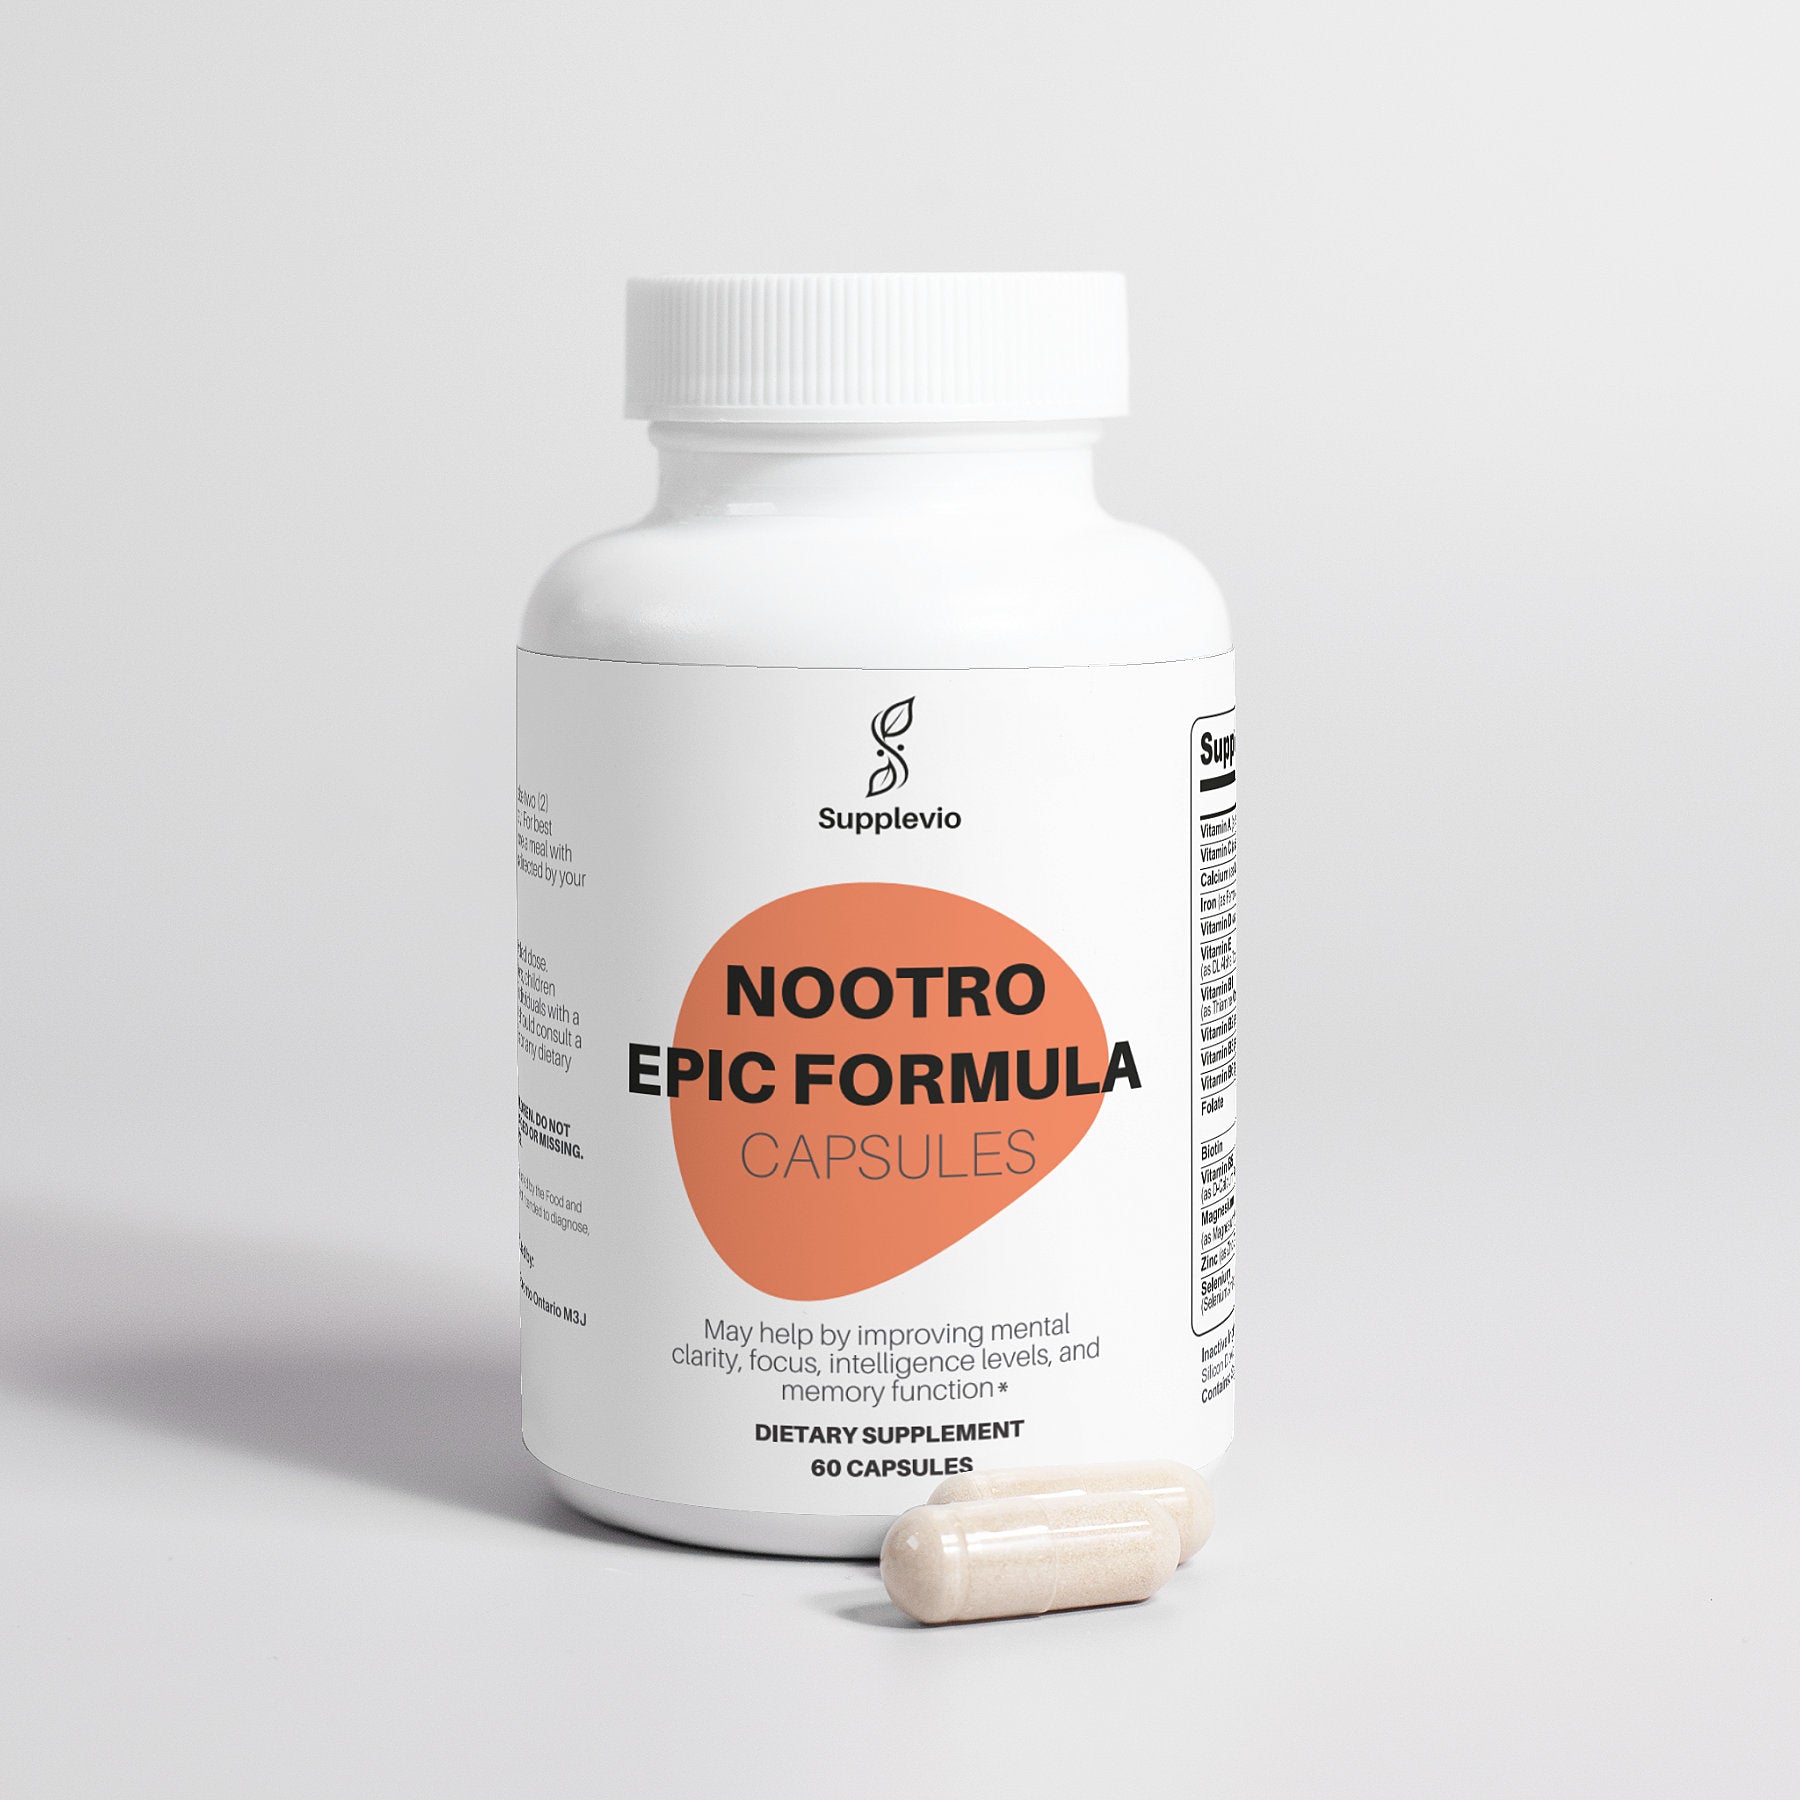 Nootro Epic Formula